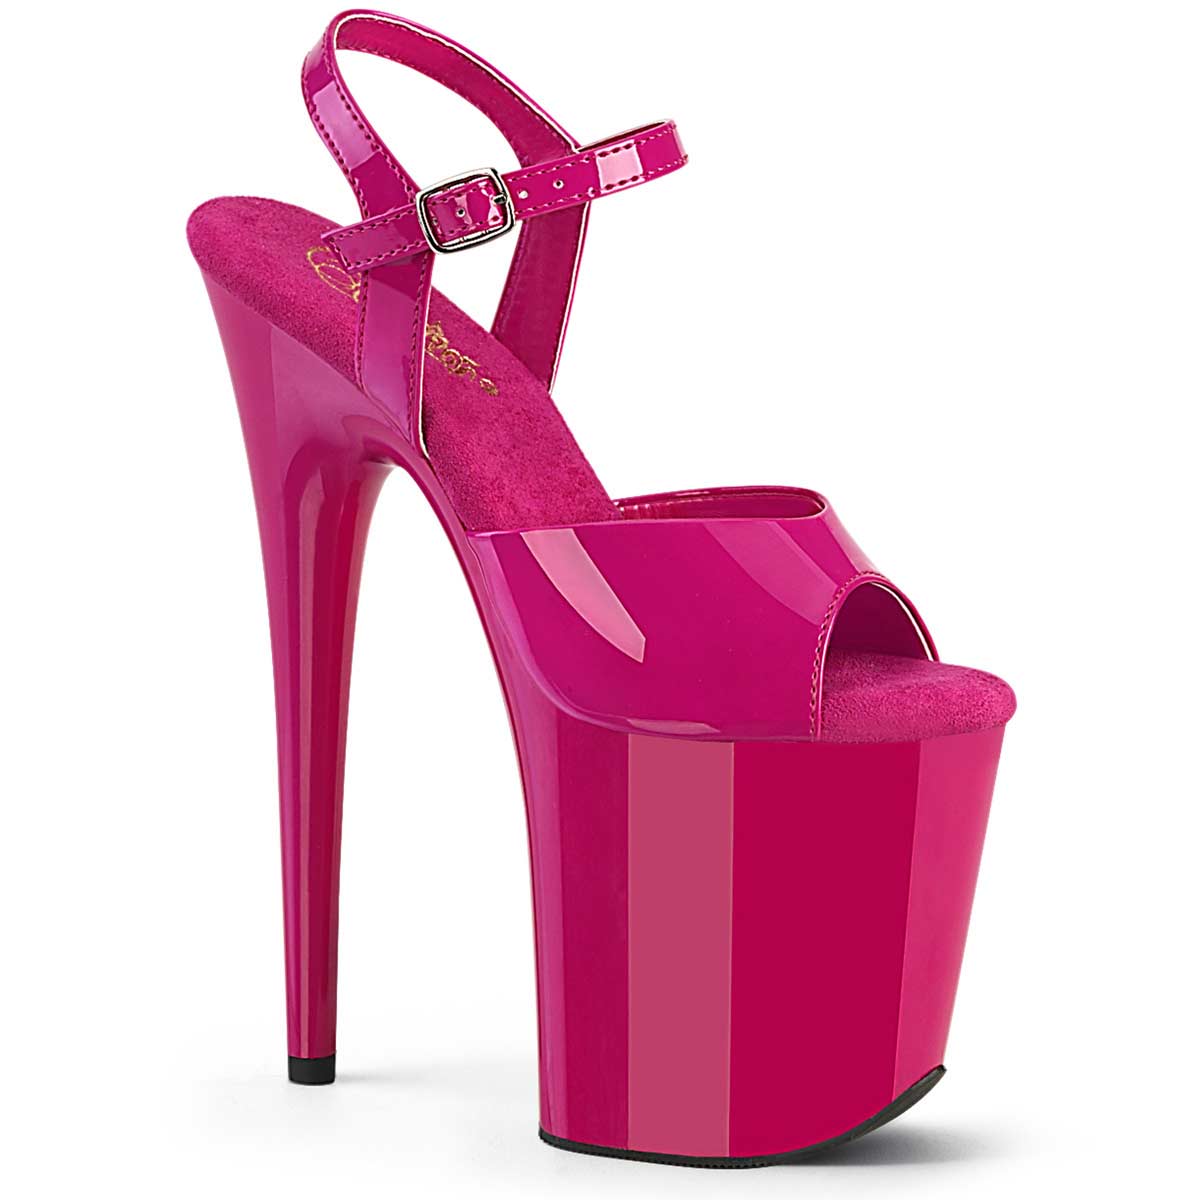 Pleaser Flamingo-809 - Pink Pat in Sexy Heels & Platforms - $59.95